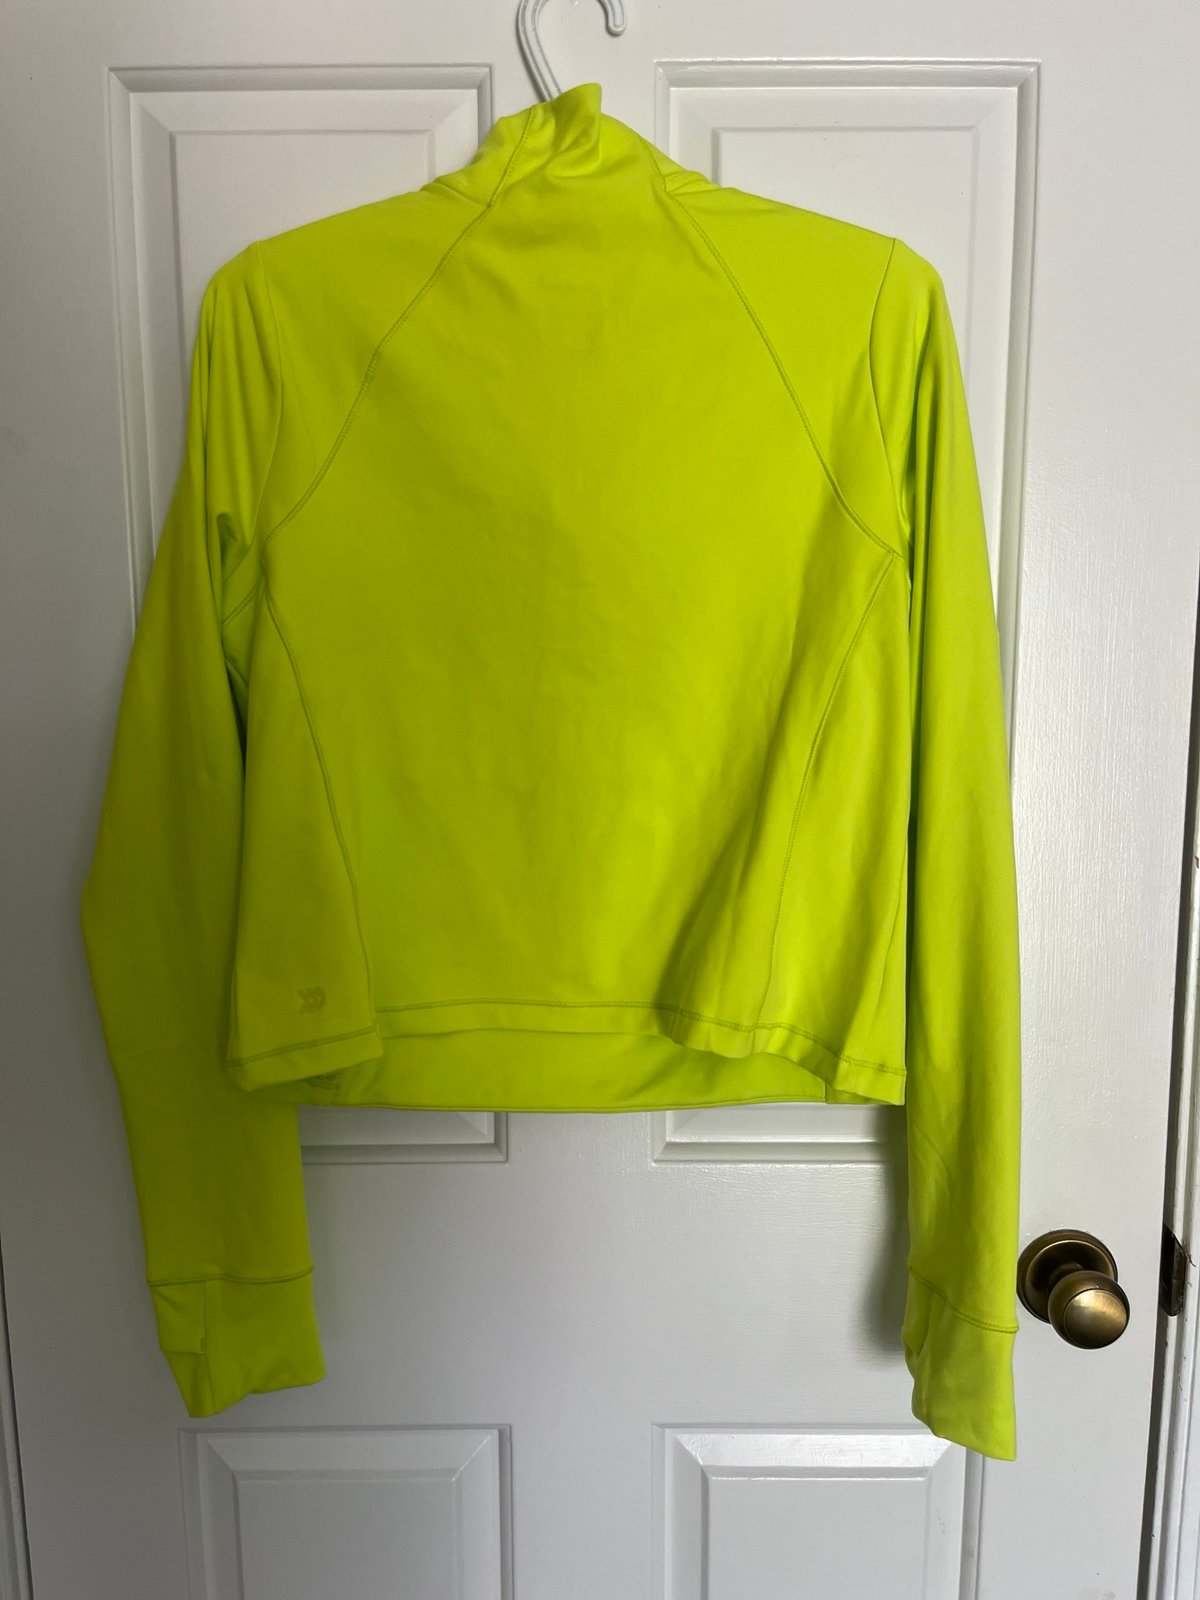 Women’s Large 1/2 Zip Jacket - Neon Green g3fwuDxAK